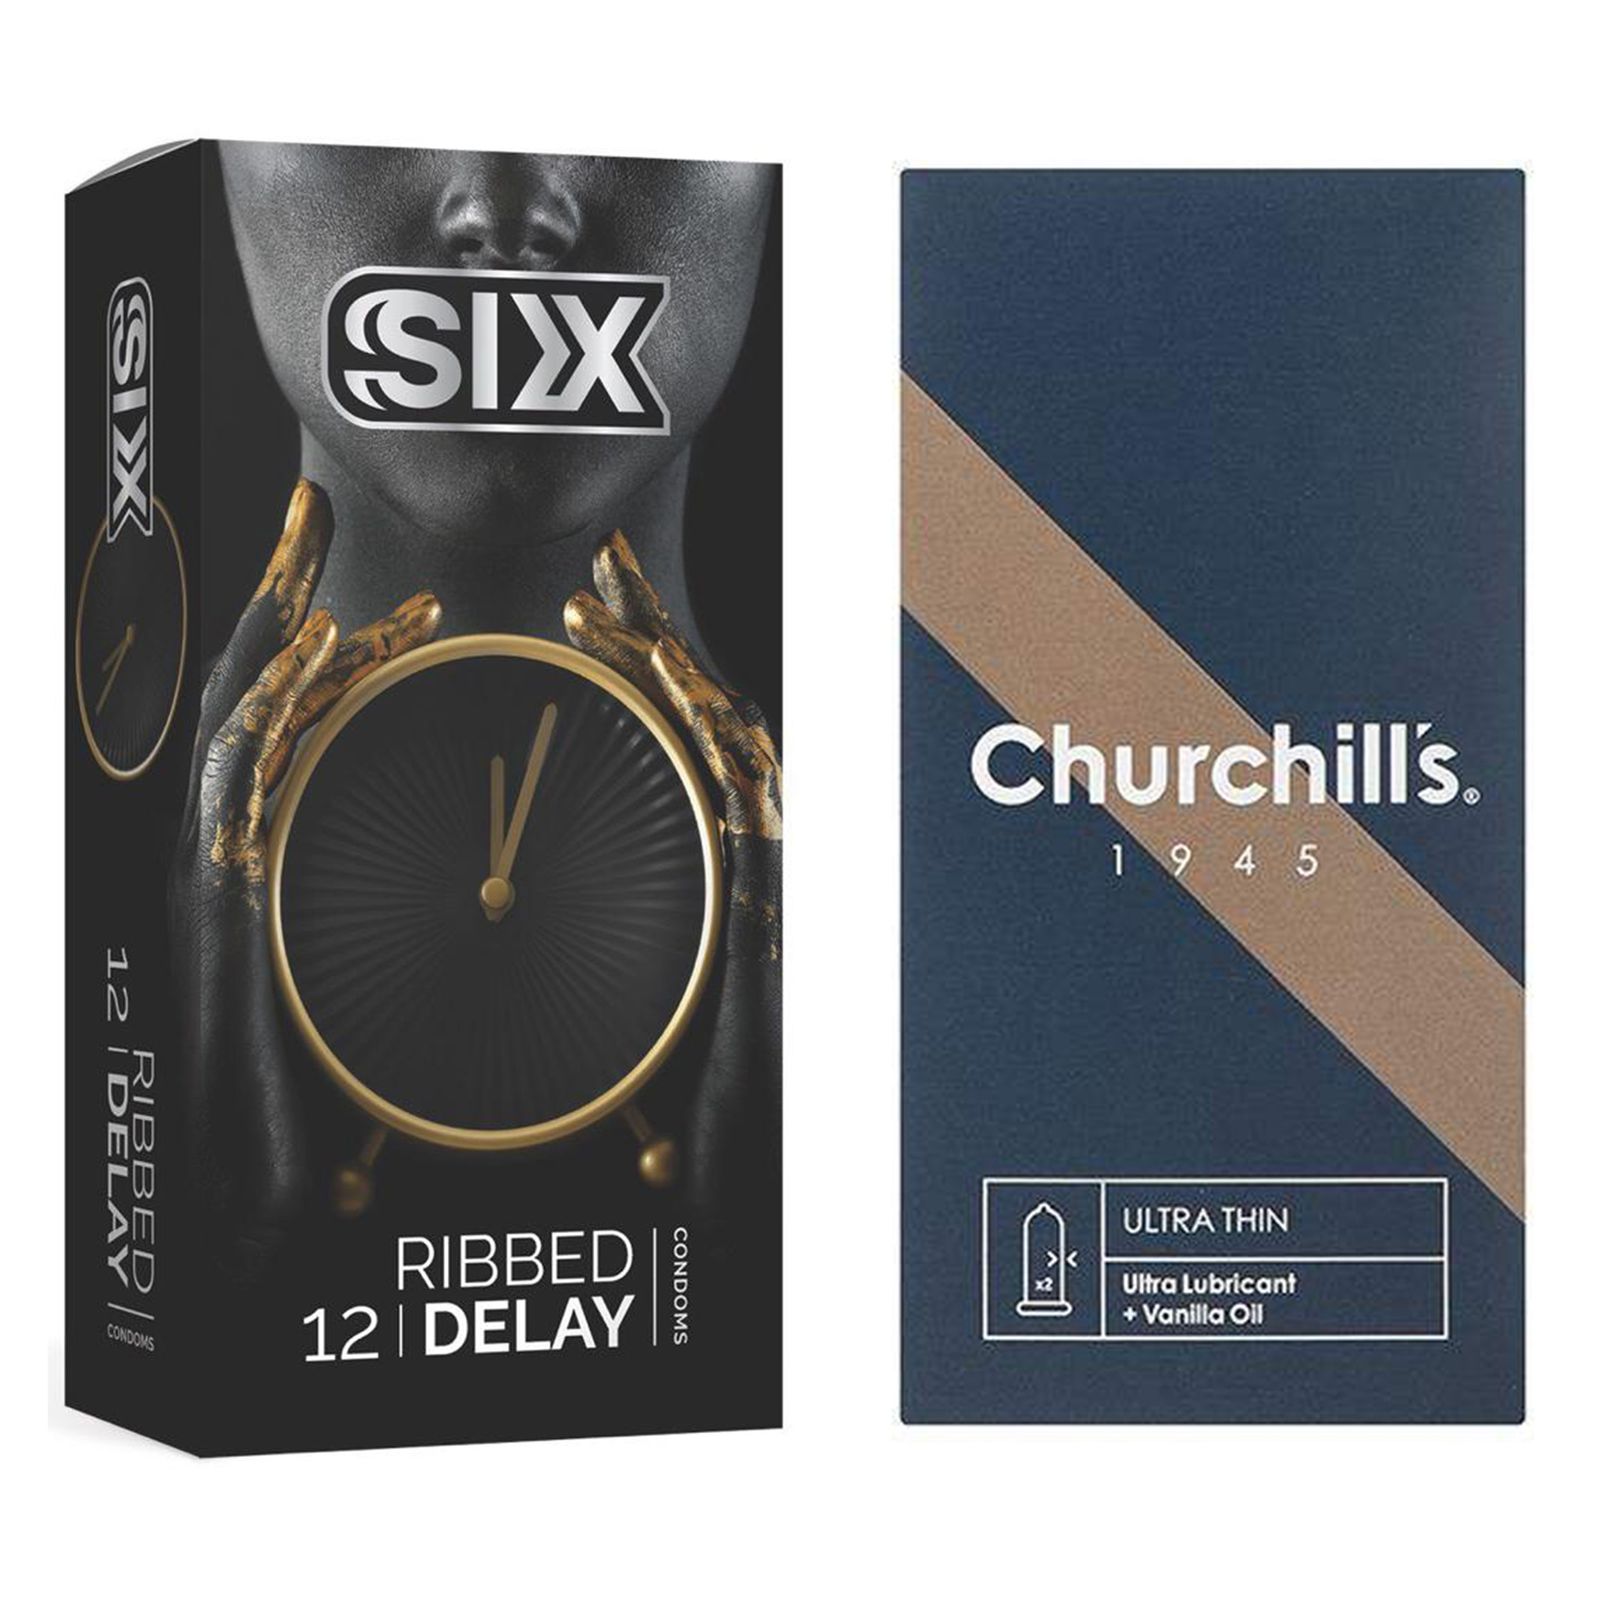 کاندوم چرچیلز مدل Ultra Thin بسته 12 عددی به همراه کاندوم سیکس مدل تاخیری شیاردار بسته 12 عددی